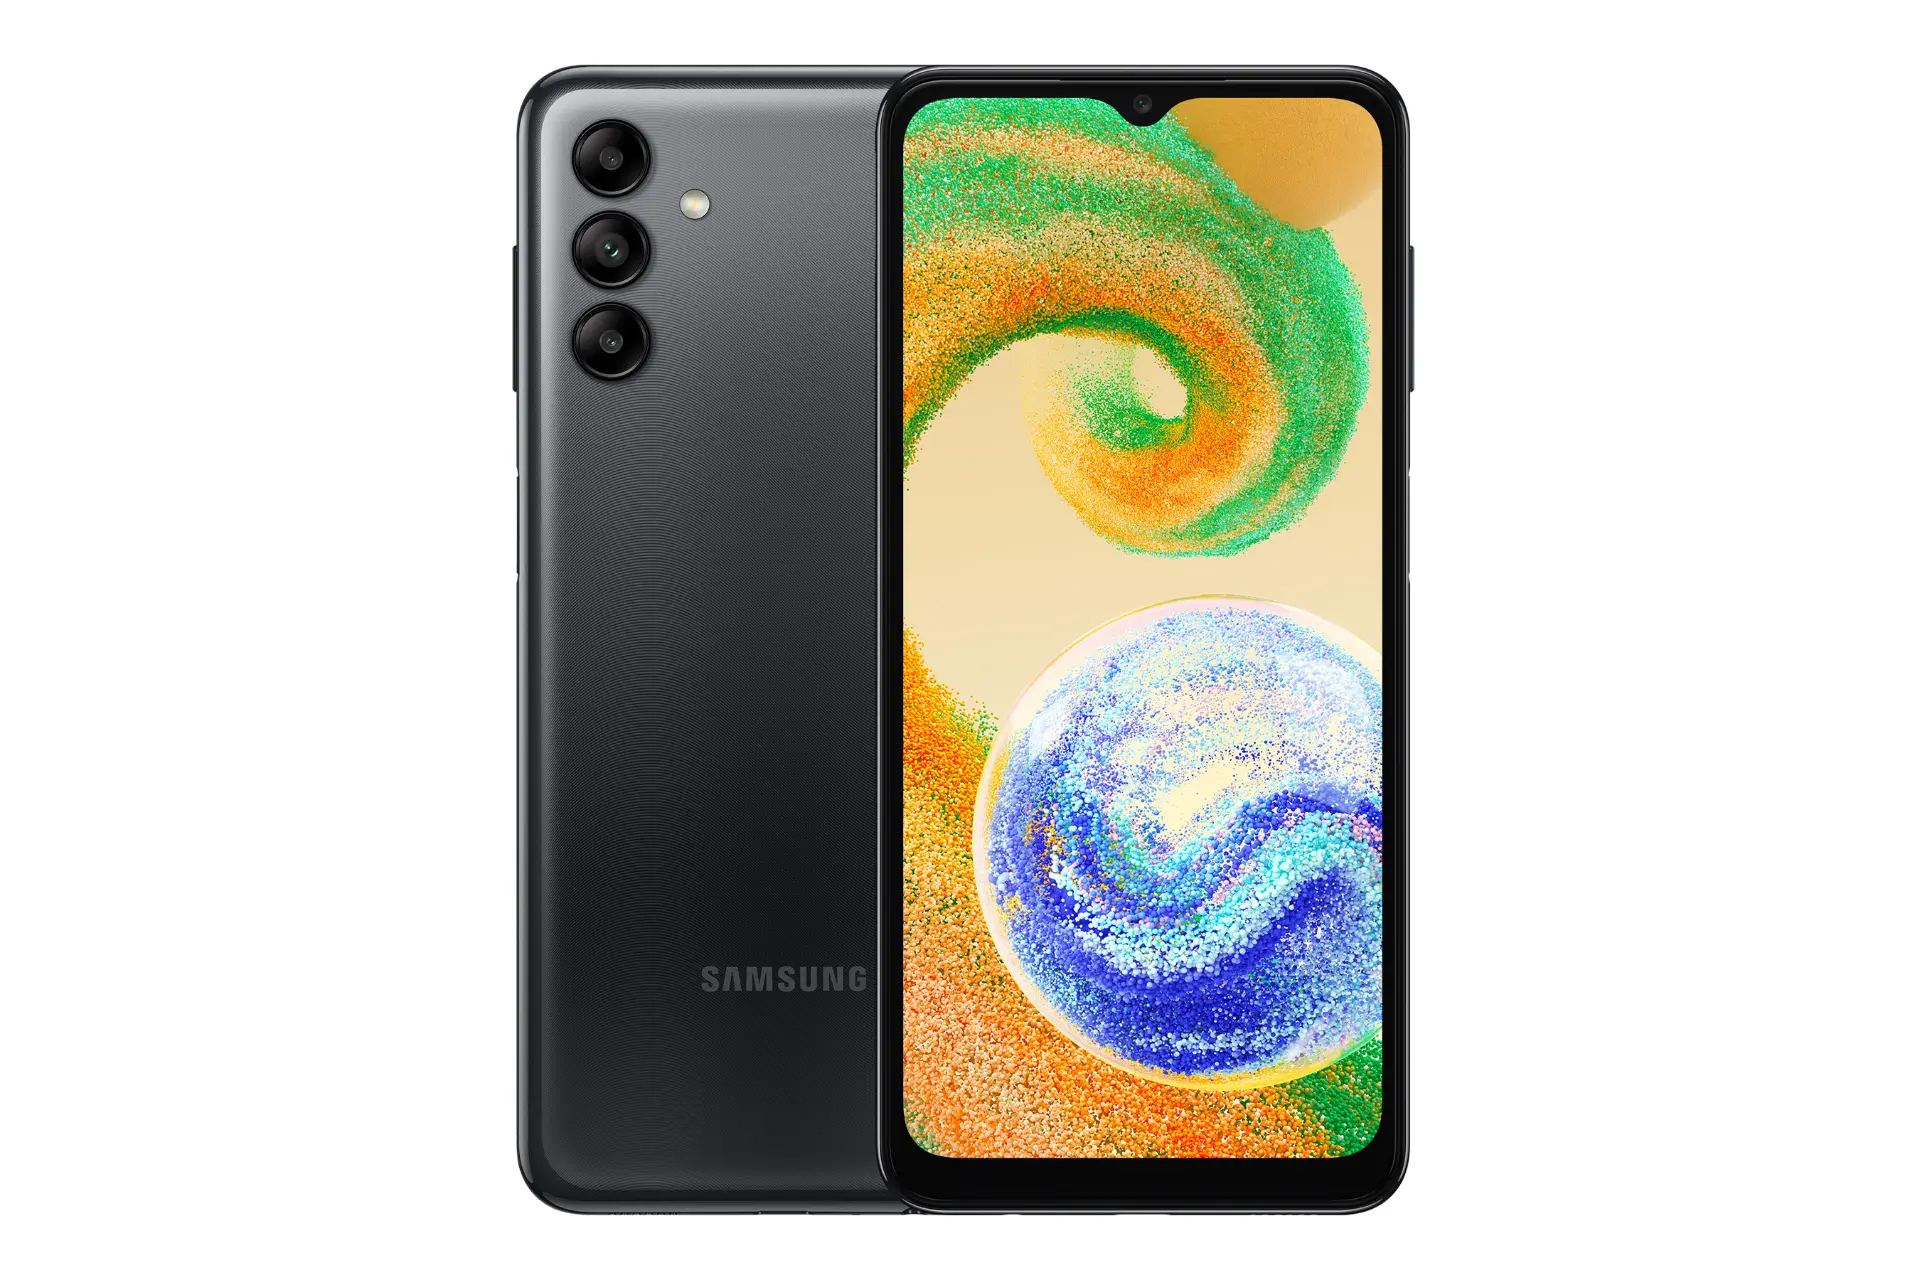 نمای کلی گوشی موبایل گلکسی A04s سامسونگ / Samsung Galaxy A04s با نمایشگر روشن و نمایش لوگو و دوربین پشت رنگ مشکی